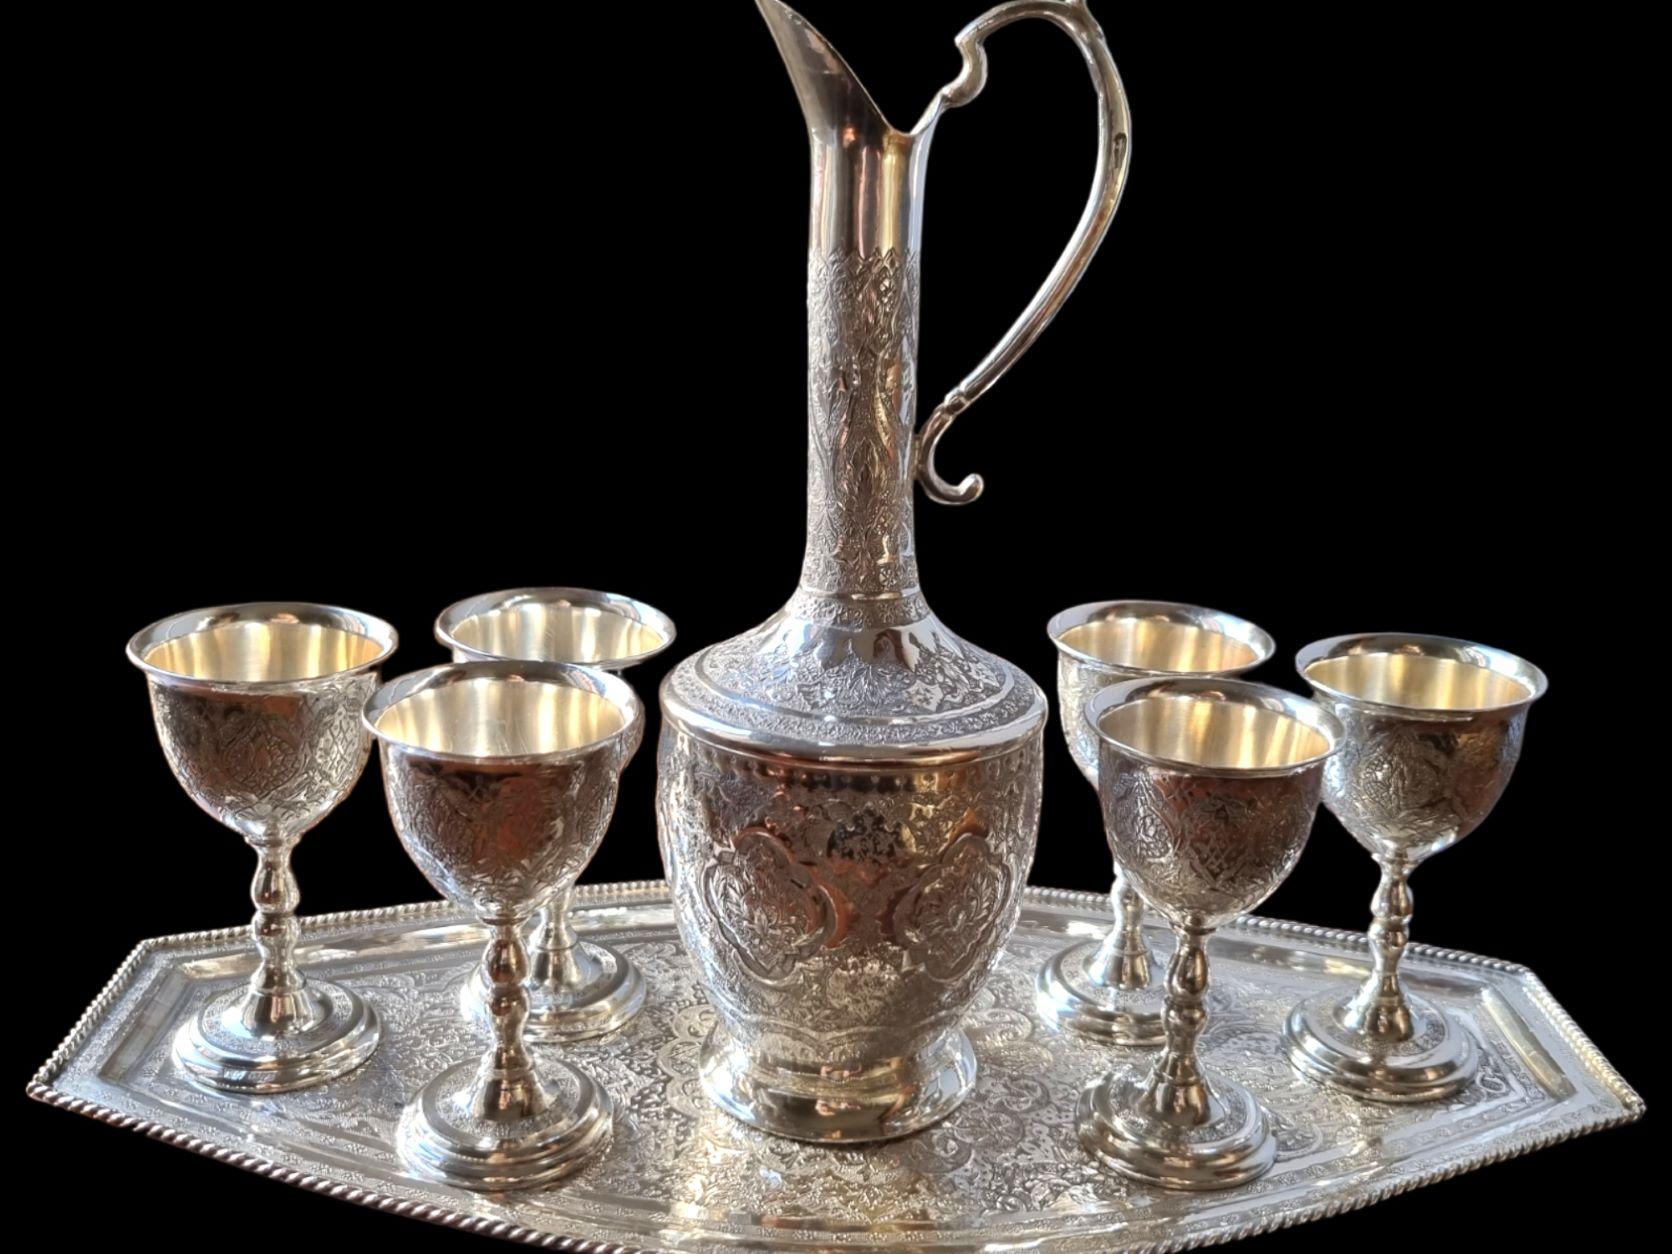 Première moitié du XXe siècle Service à boire en argent massif islamique persan, comprenant une cruche et six gobelets sur un plateau, chaque pièce étant abondamment gravée et ciselée d'un décor d'arabesques typiquement persan, la cruche ayant un